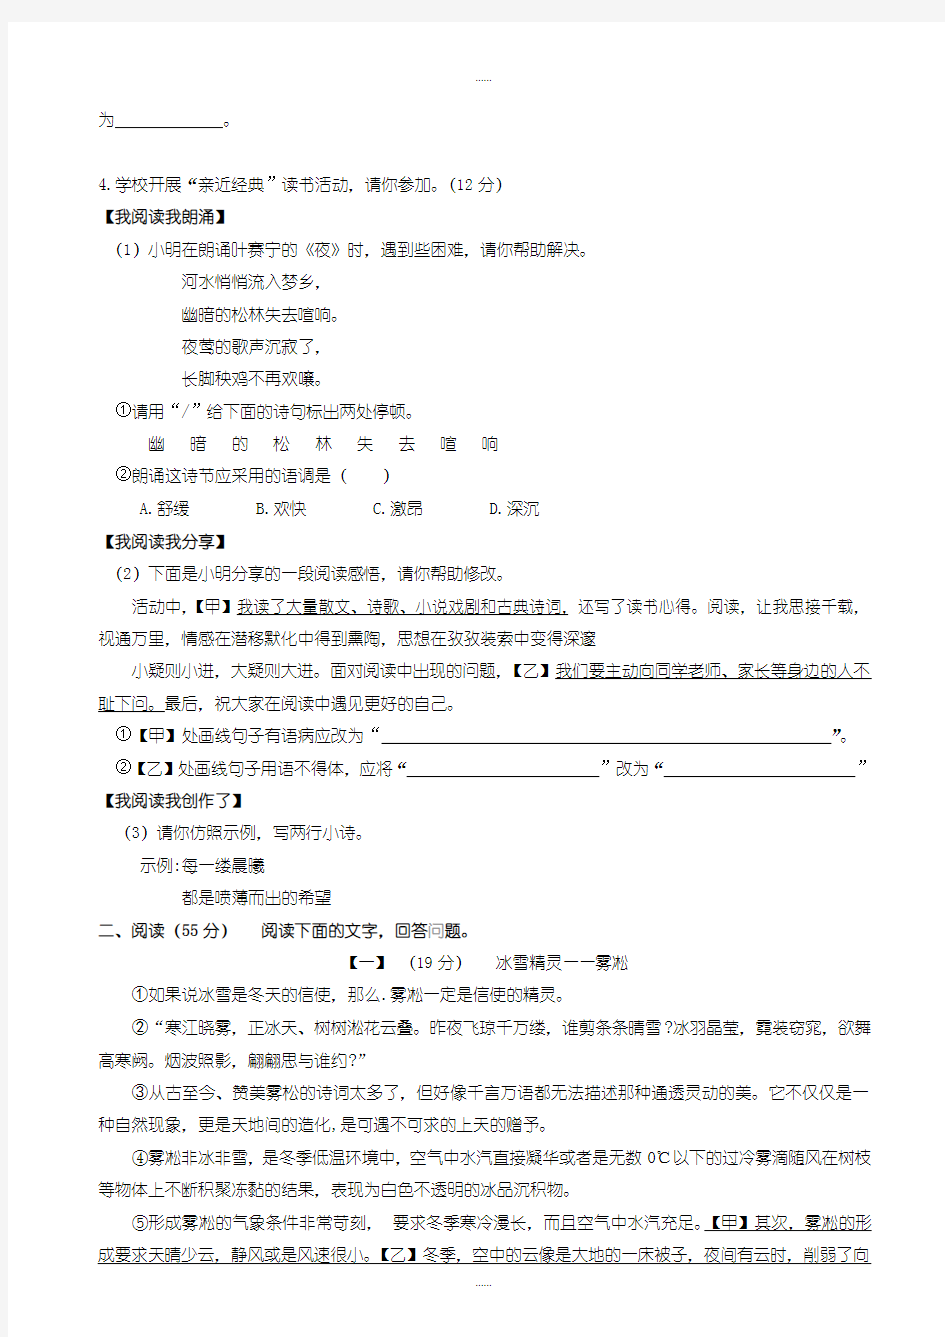 精编2019级安徽省中考语文模拟试卷(有标准答案)